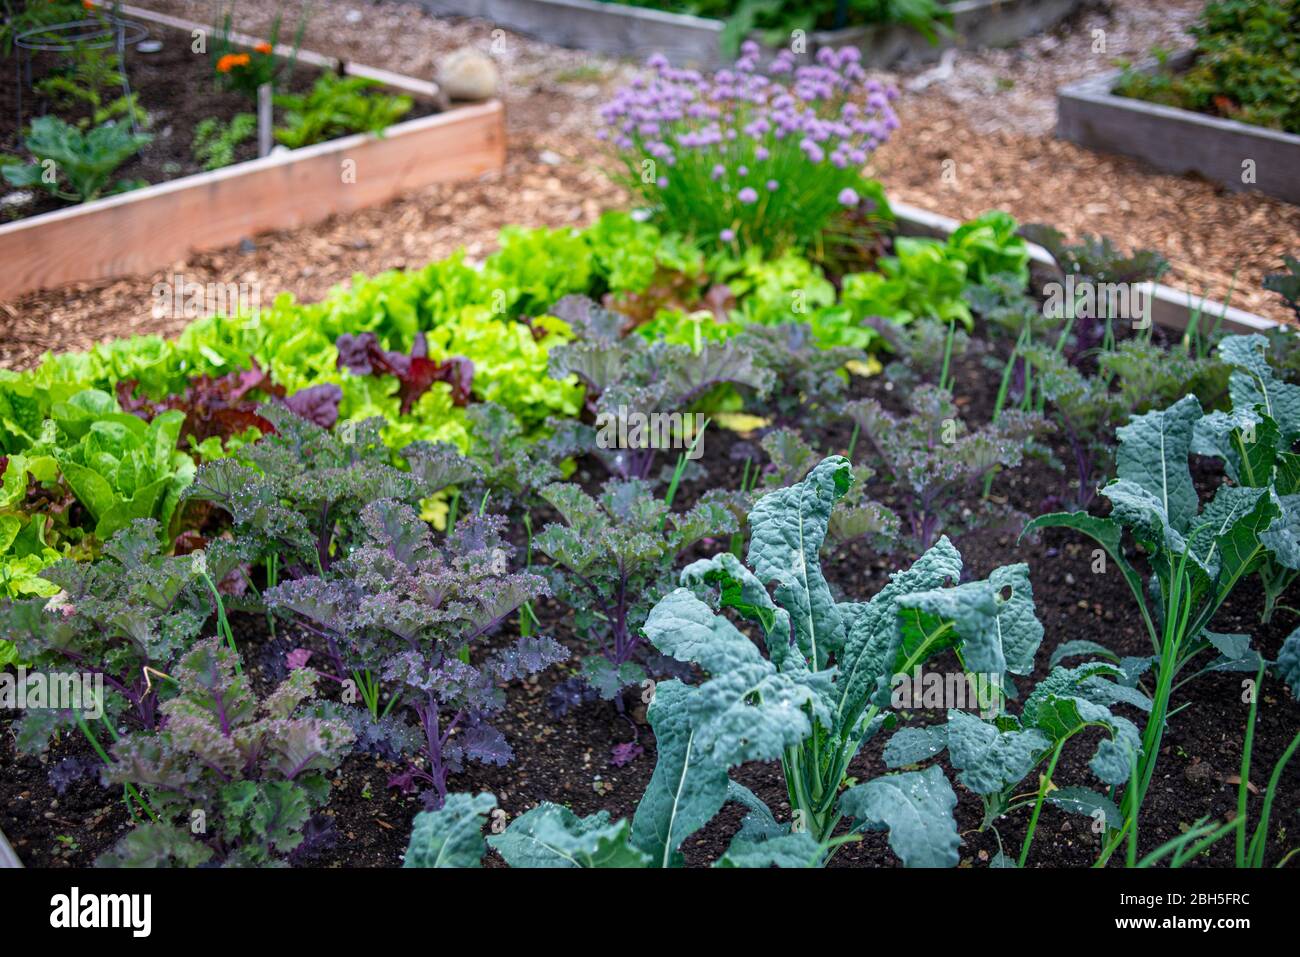 Lit élevé de légumes dans un terrain de jardin Banque D'Images